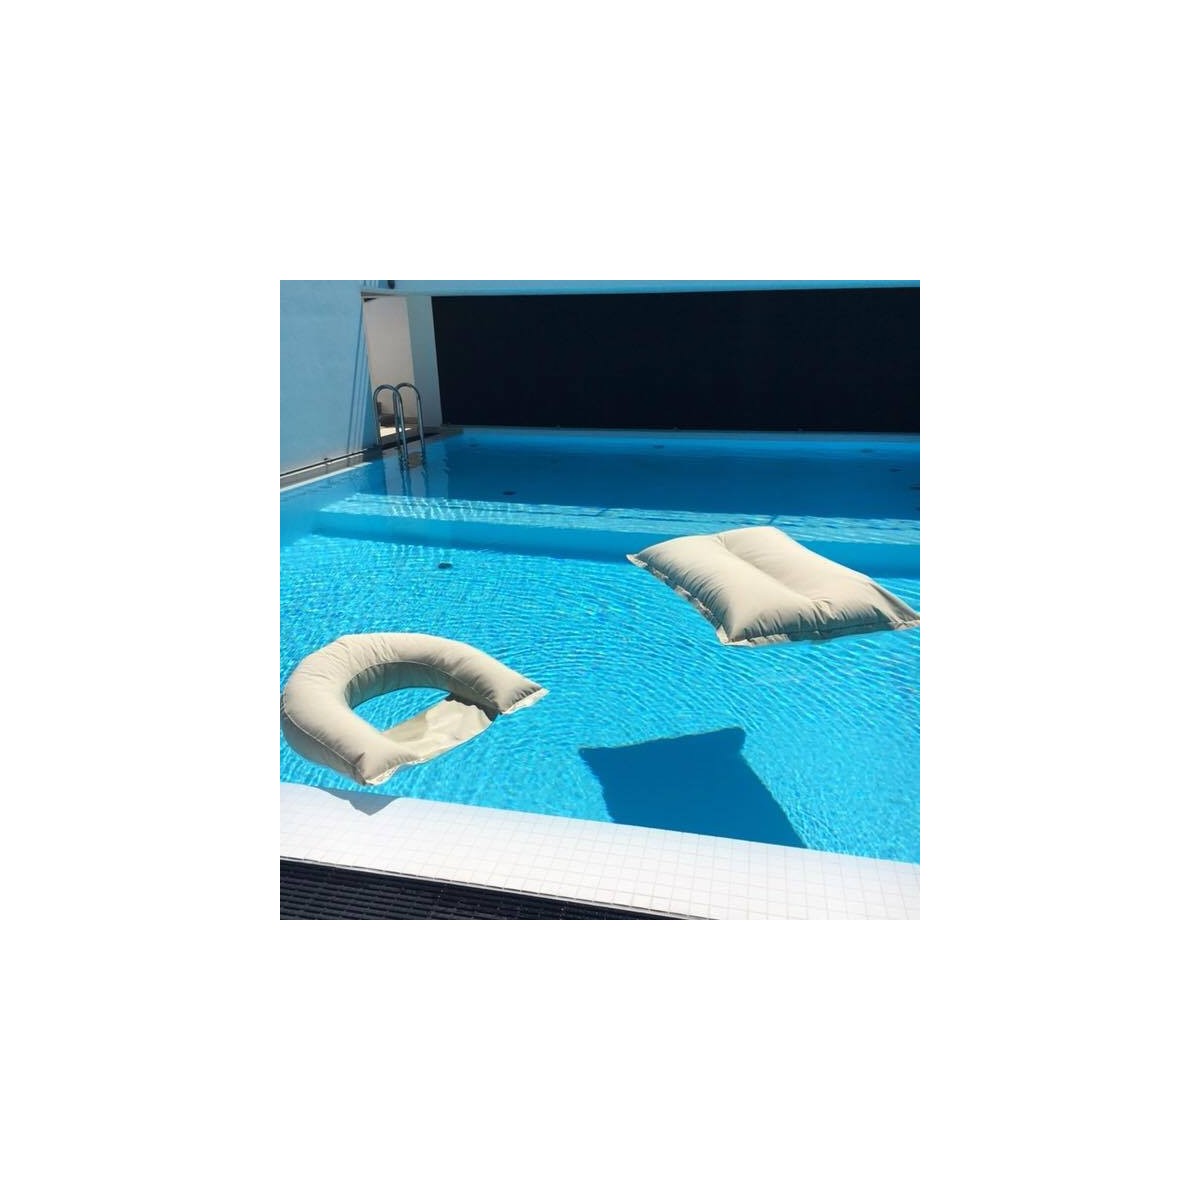 Ferro di cavallo - Poltrona galleggiante per piscina